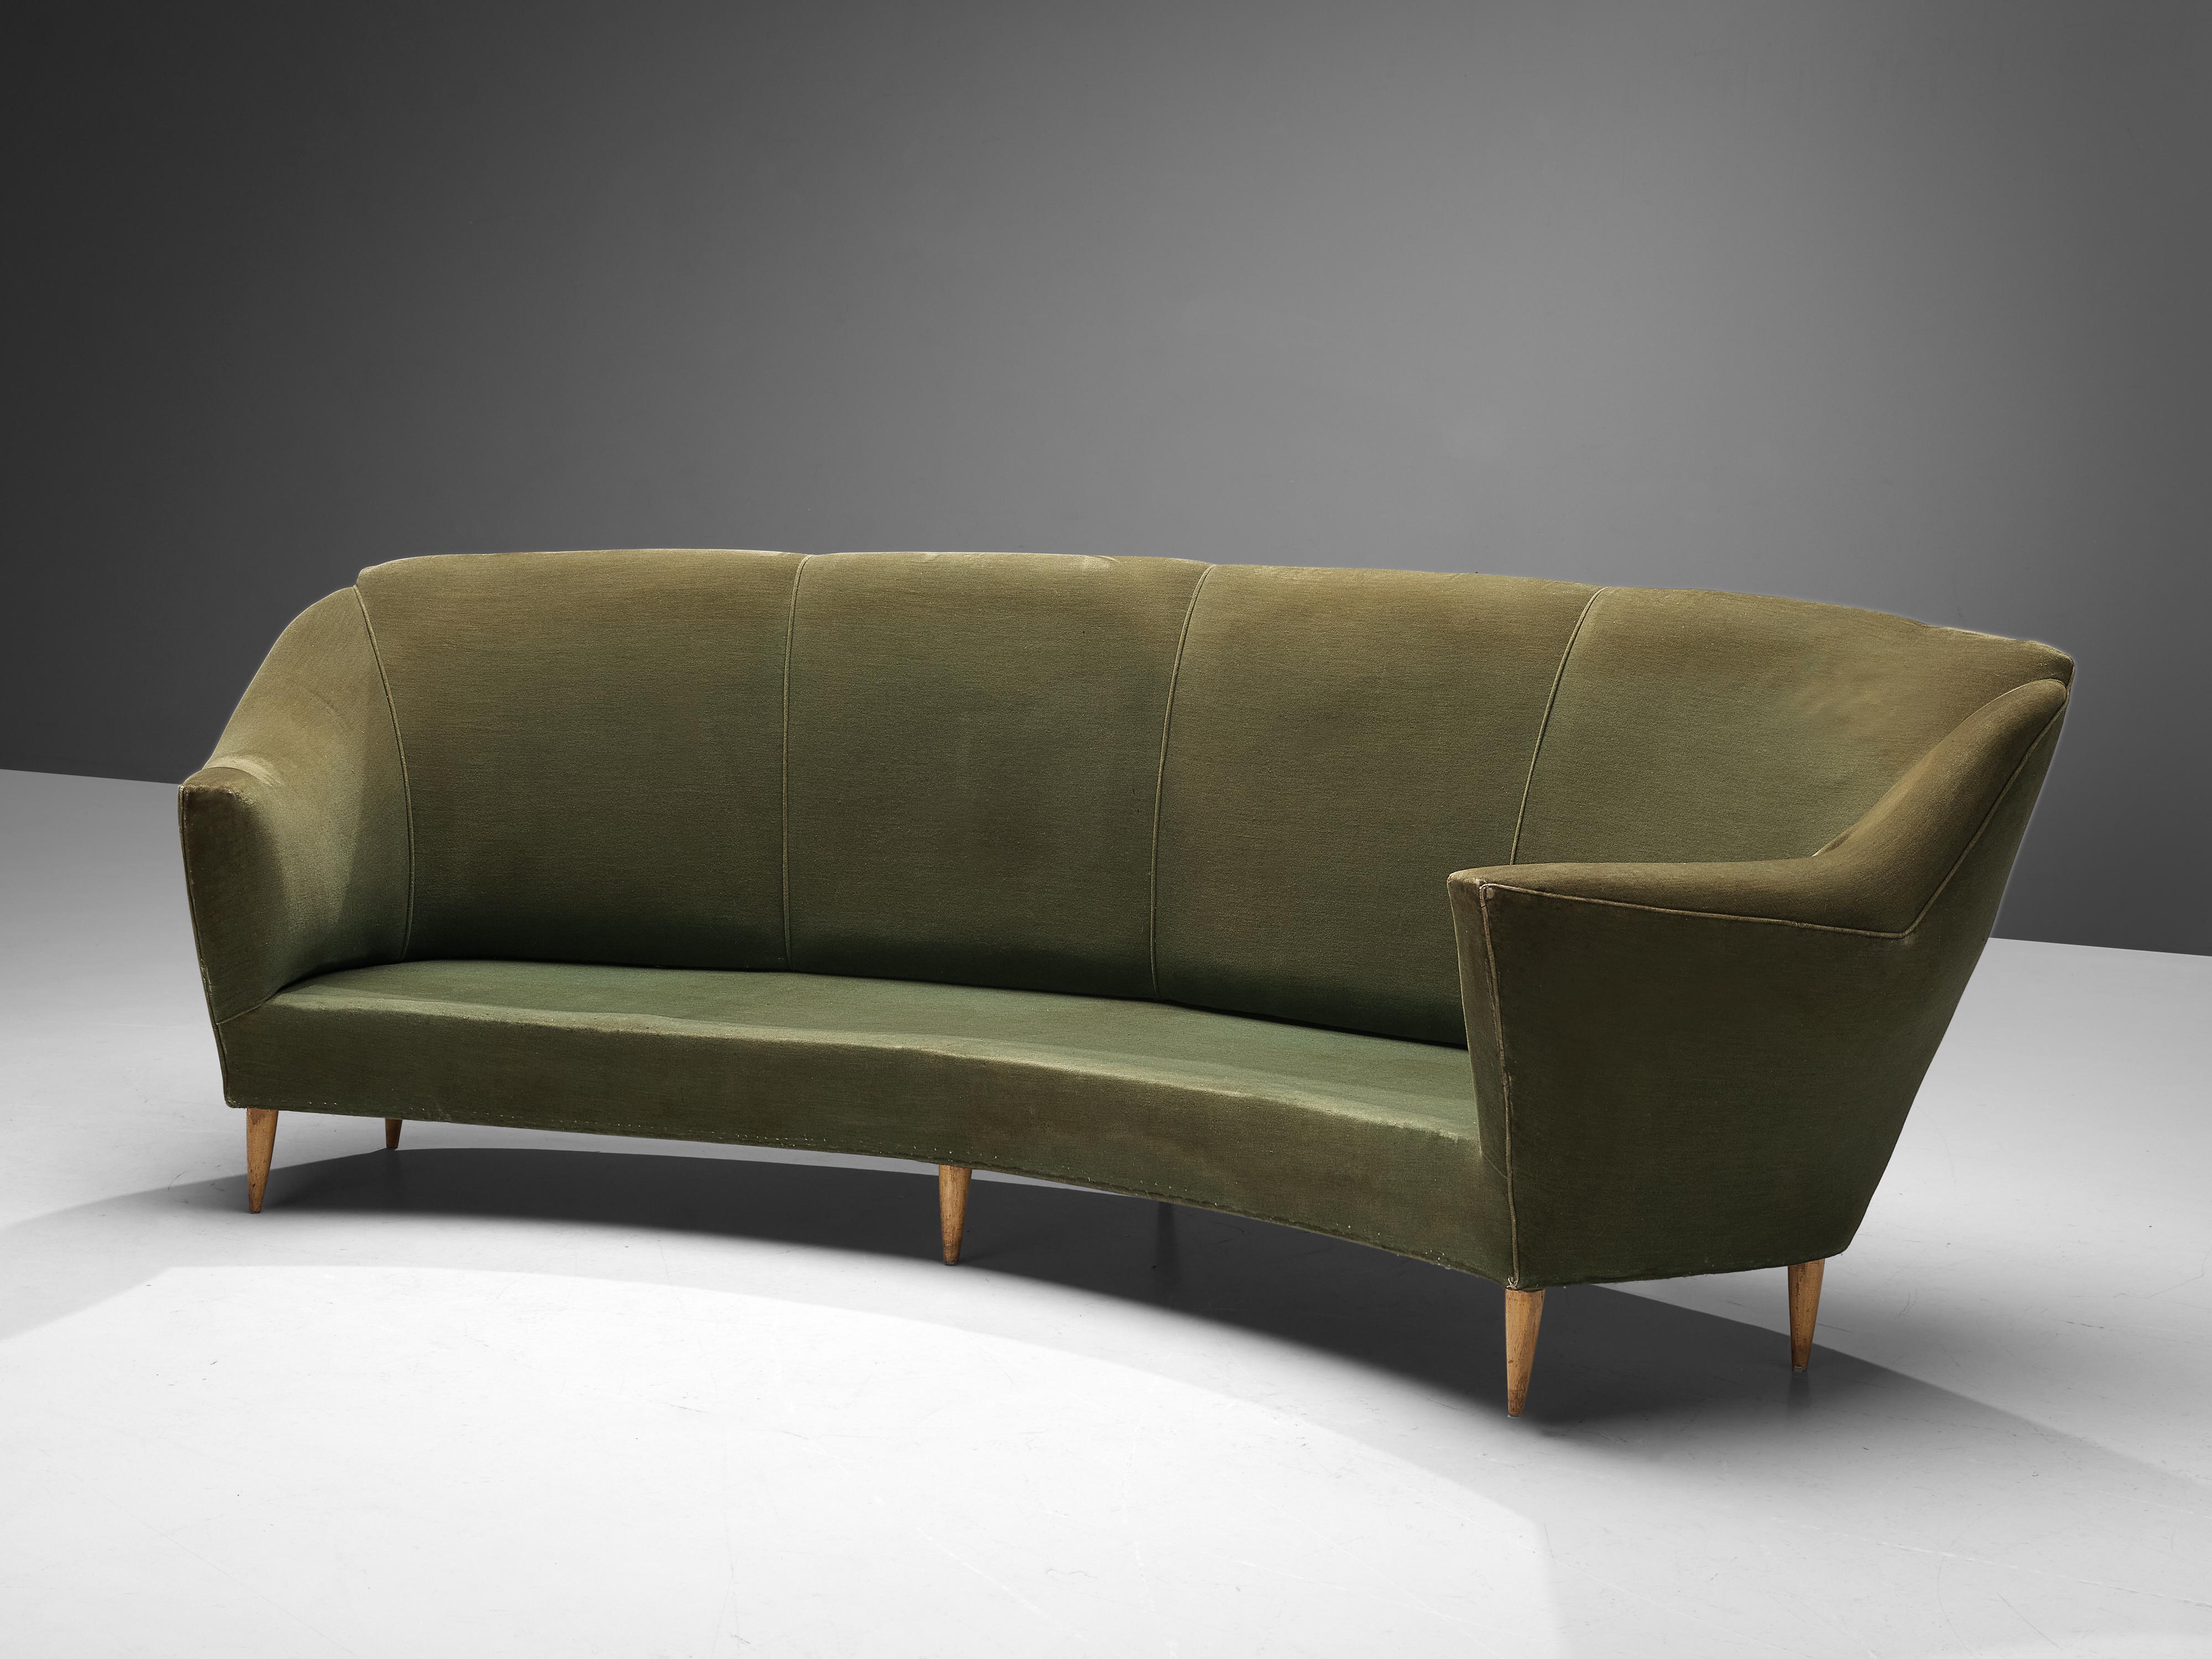 Sofa, Stoff und Holz, Italien, 1950er Jahre. 

Schlichtes italienisches Sofa mit klaren Linien und hoher Rückenlehne. Das Sofa hat kleine, spitz zulaufende Holzbeine. Der hohe Rücken umarmt den Sitzenden auf tröstliche Weise. Die Armlehnen sind zum